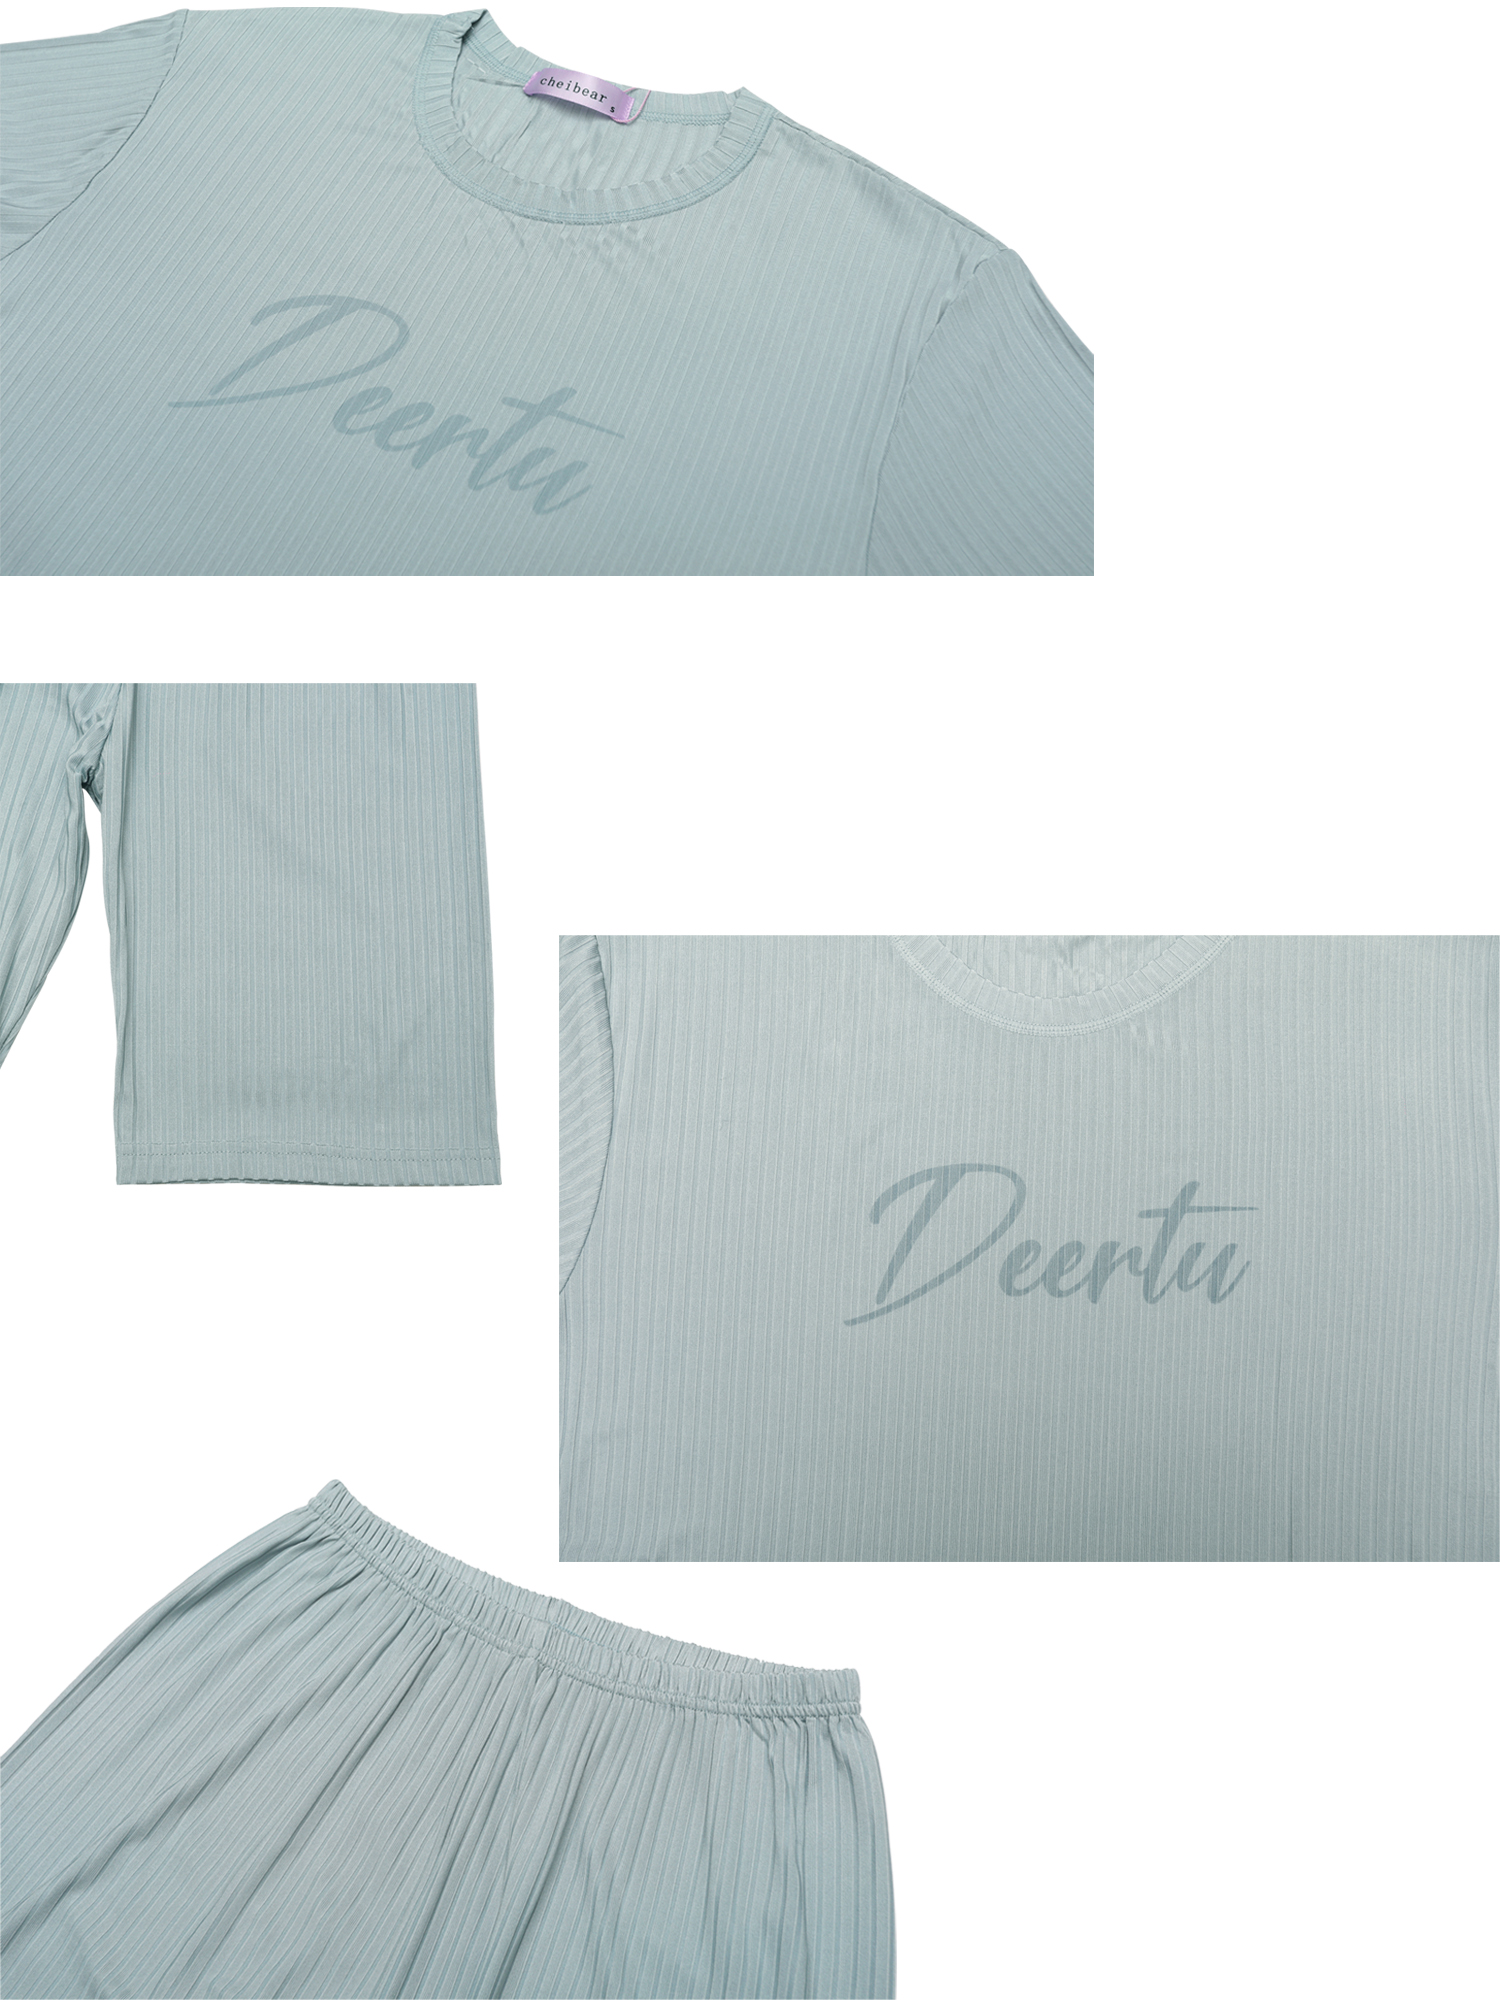 Unique Bargains Men’s Sleepwear Short Sleeve with Capri Pants Letters Family Pajama Sets